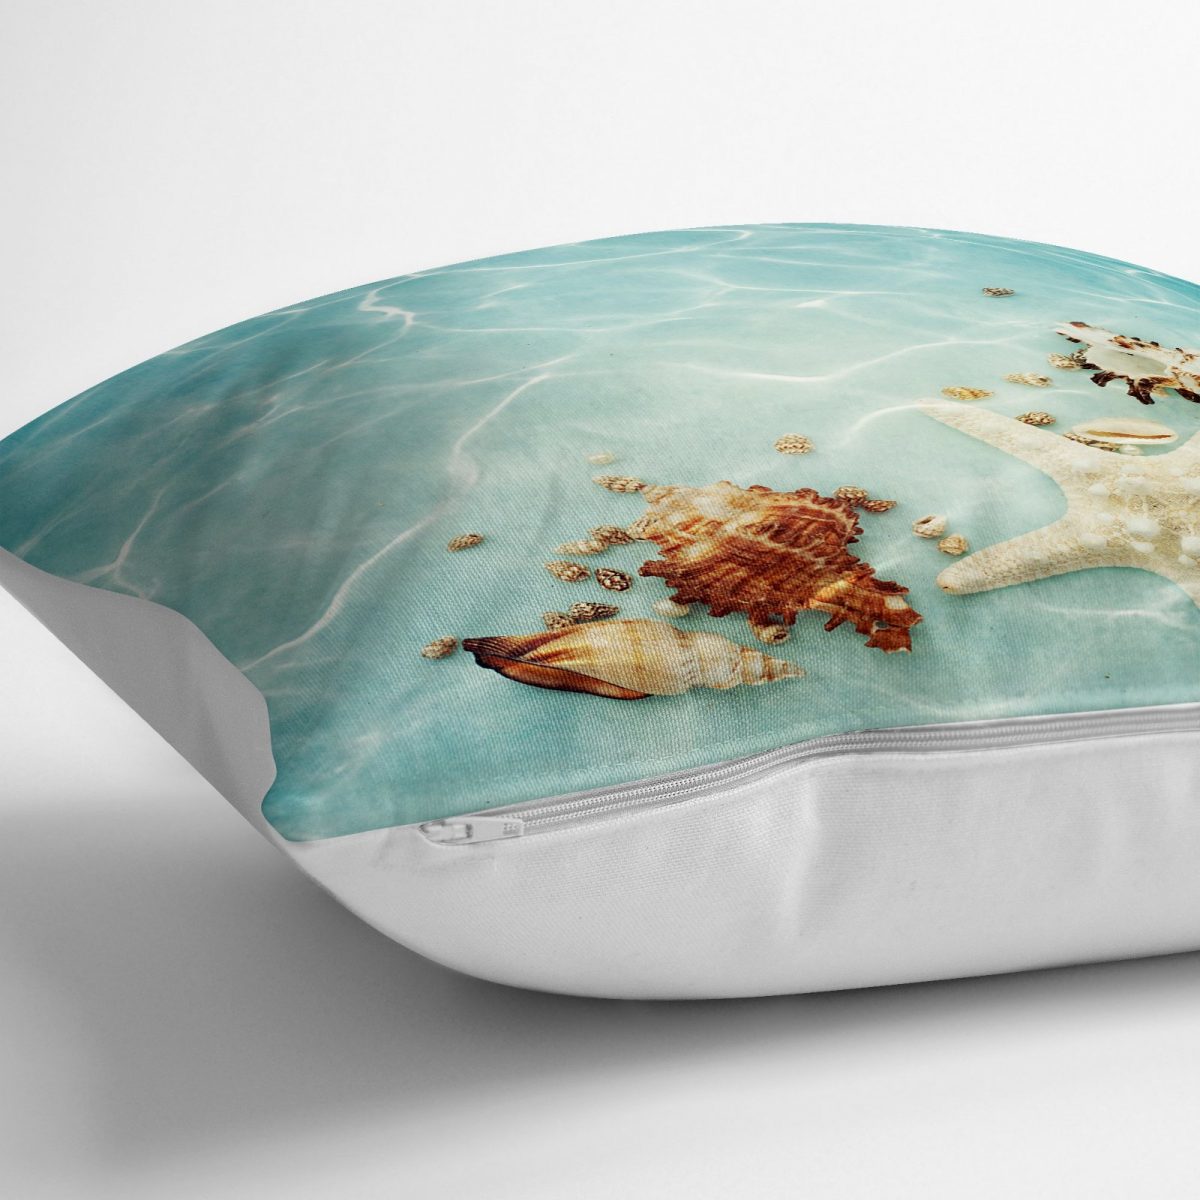 RealHomes Deniz Yıldızı Tasarımlı Dijital Baskılı Dekoratif Yer Minderi - 70 x 70 cm Realhomes